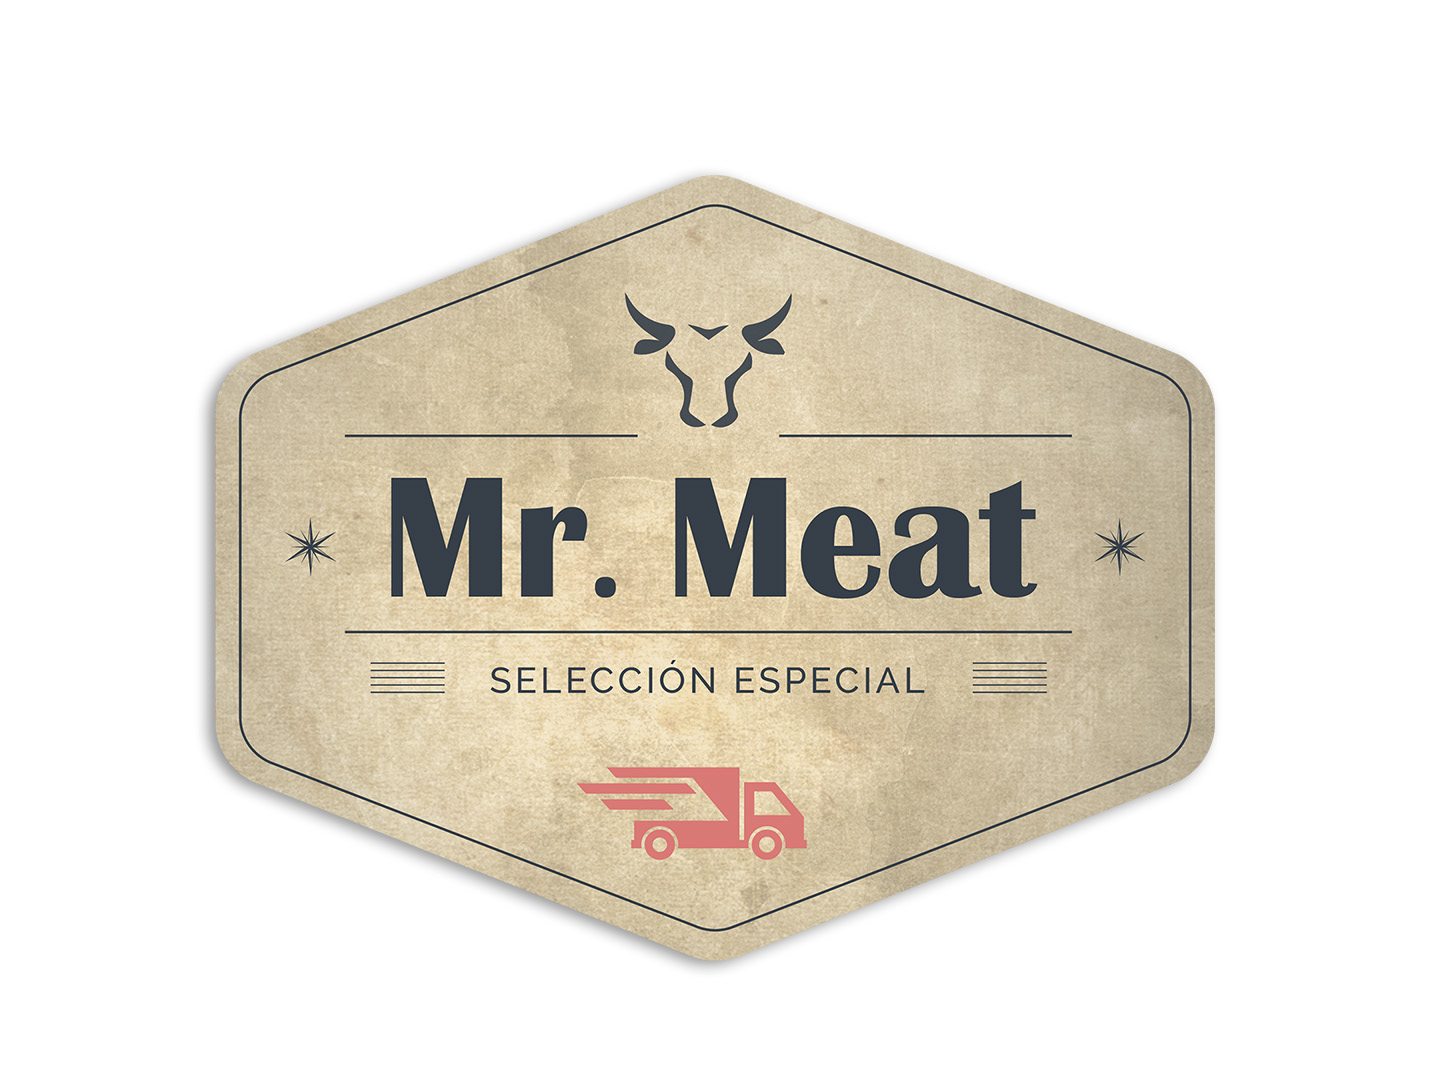 Meat game. Мистер мит игра логотип. Лого Mr. meat 1 на прозрачном фоне.